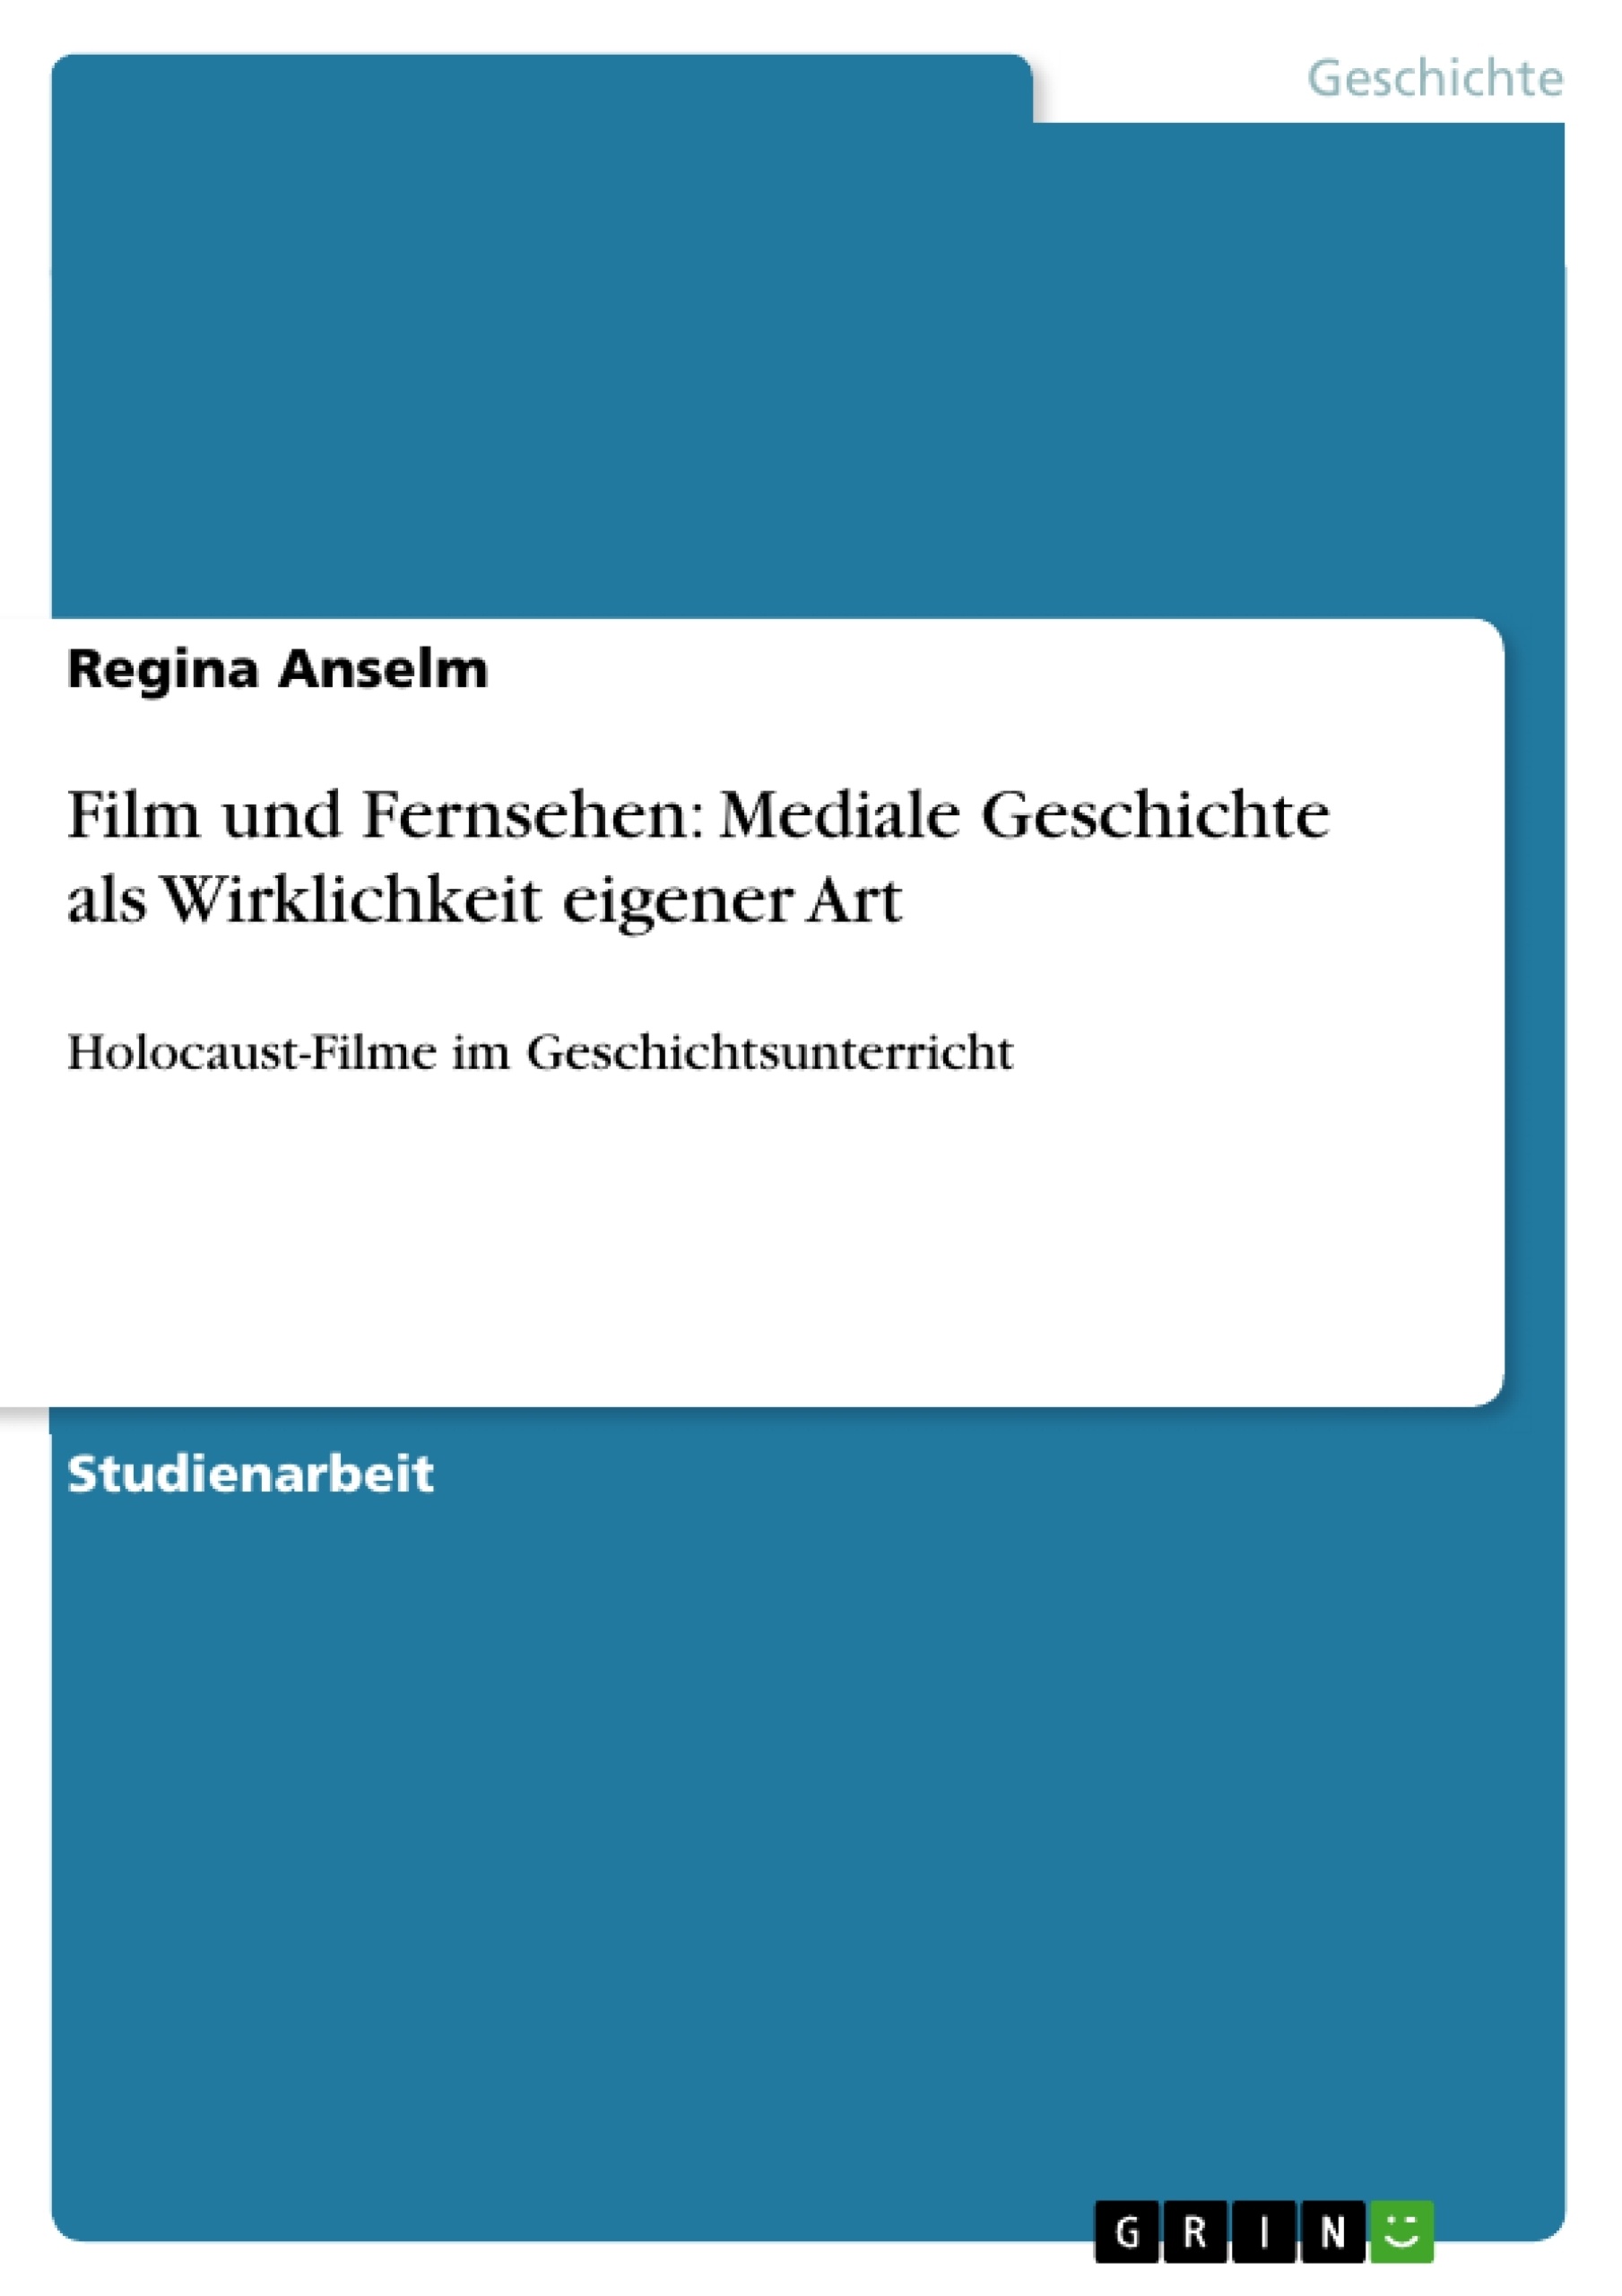 Title: Film und Fernsehen: Mediale Geschichte als Wirklichkeit eigener Art